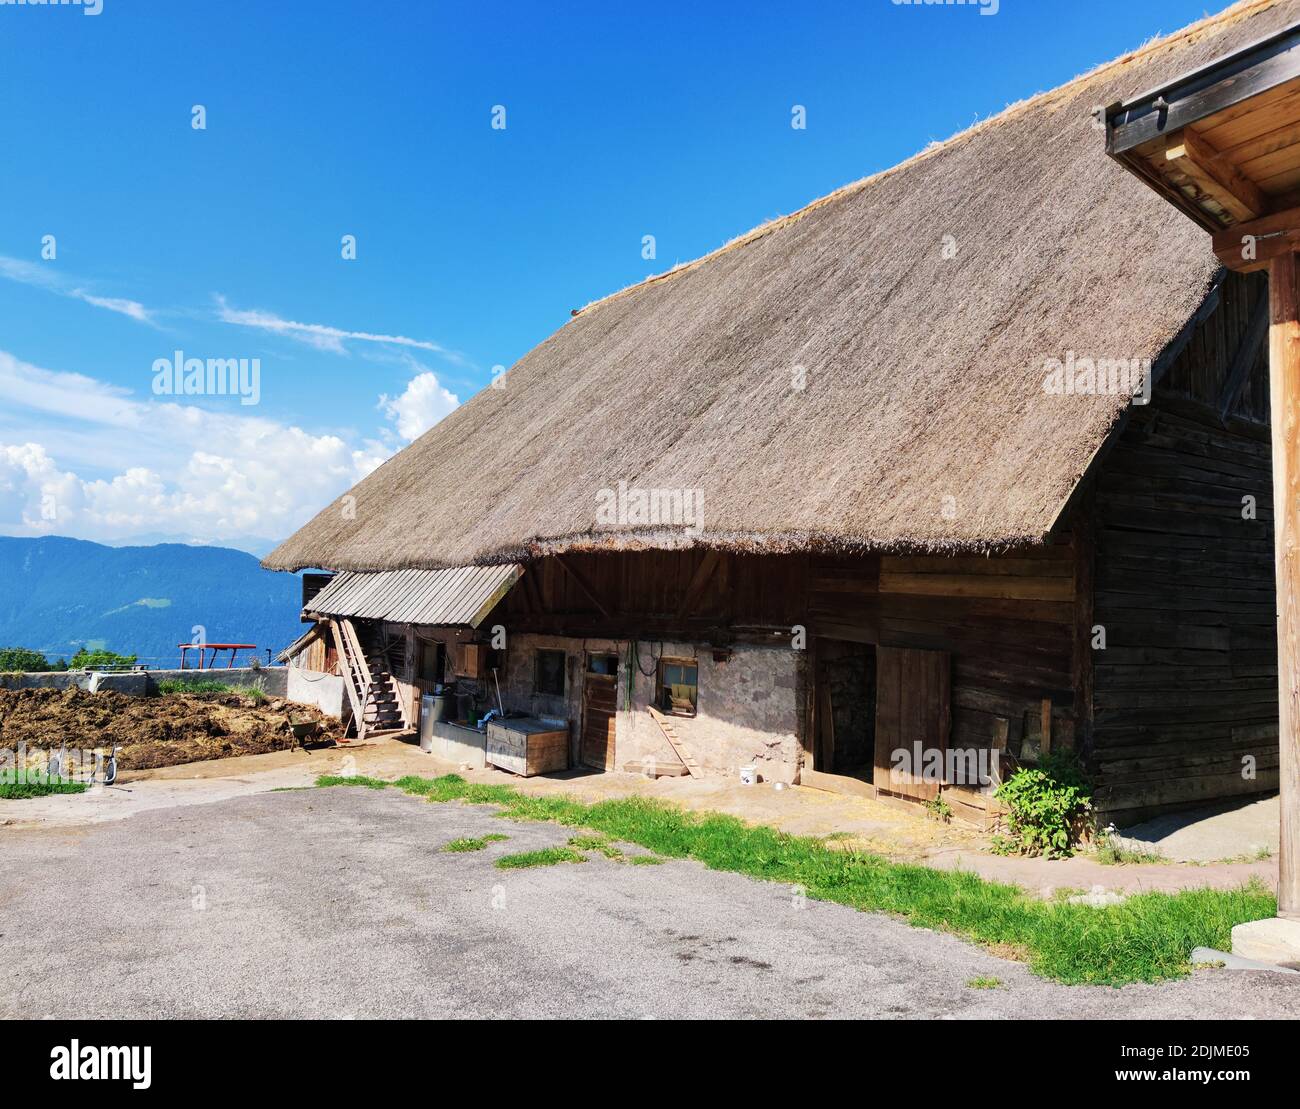 El techo de junco en este edificio estable tirolés del sur El Valle del Adige es una rareza nacional Foto de stock